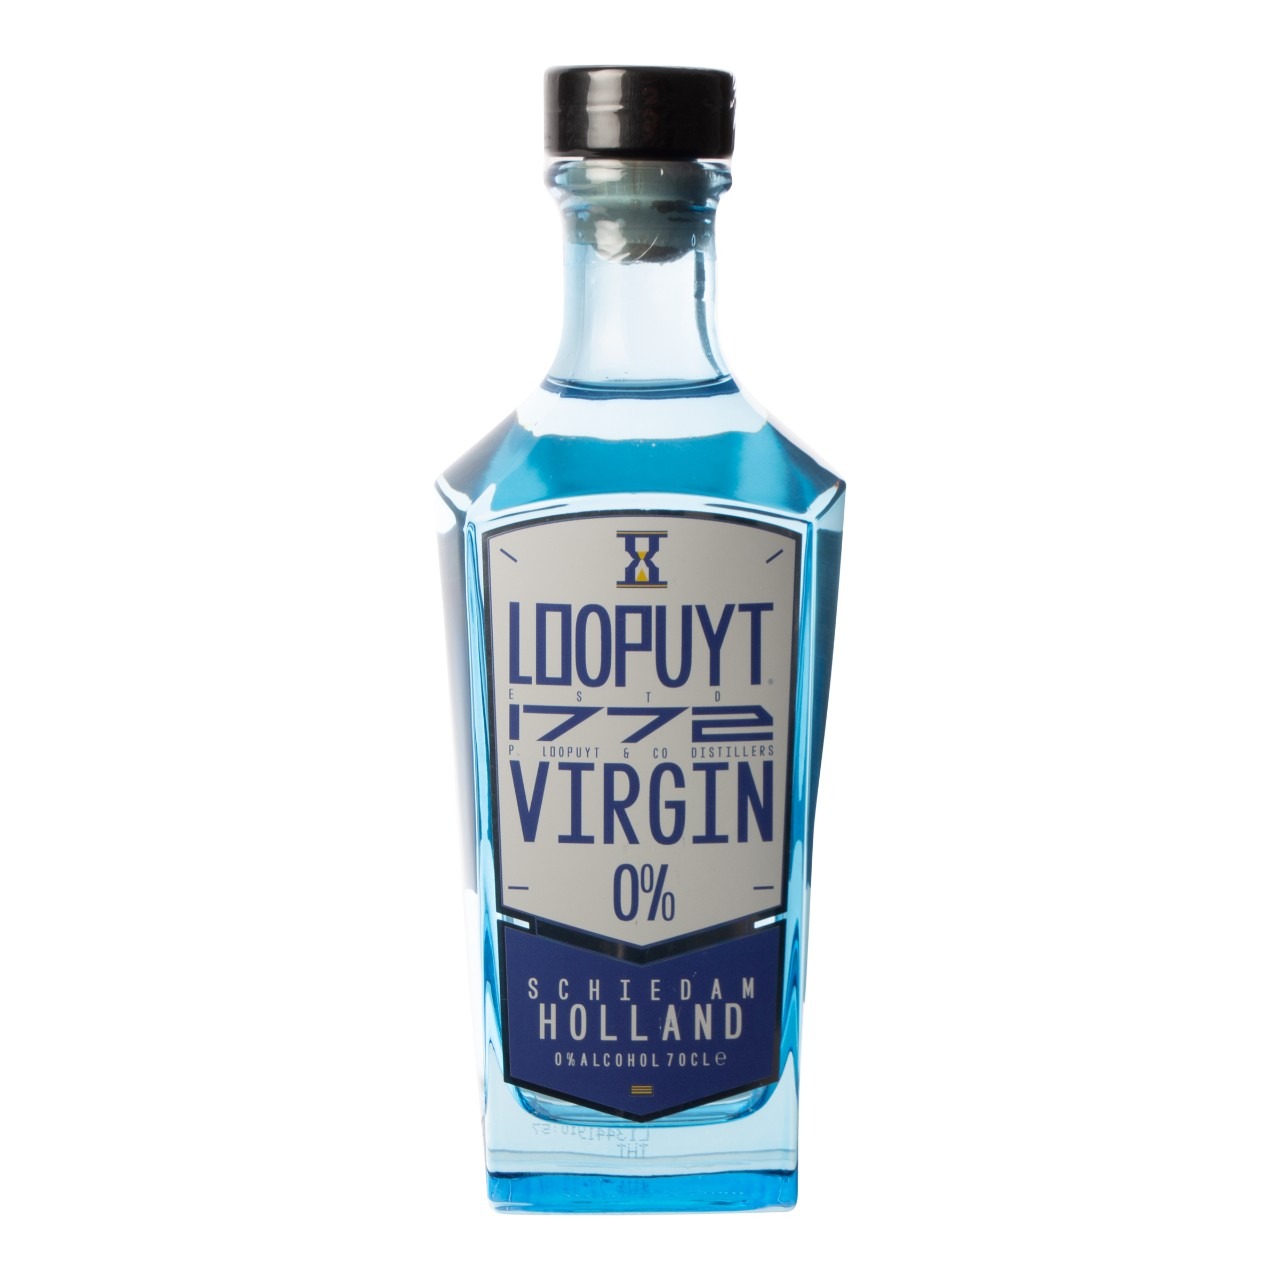 Plagen schudden aansluiten Loopuyt Virgin 0% Fles 70 cl P. Loopuyt & Co Distillers Schiedam kopen? |  Gratis verzending vanaf € 50,- | Wijnkeuze-online.nl